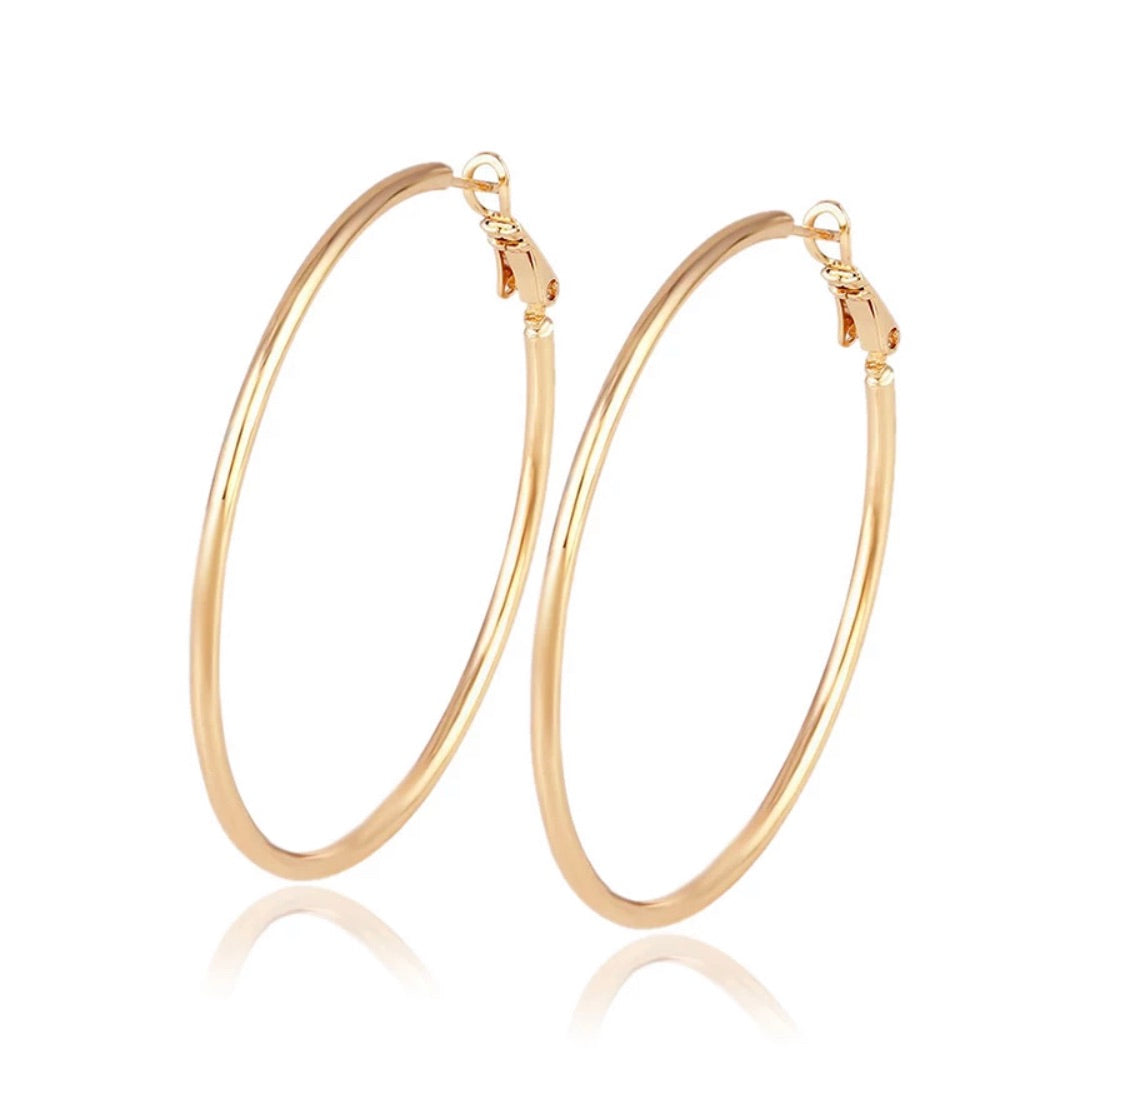 Modern Essentials - Rose Gold Hoops Earrings - Crowned